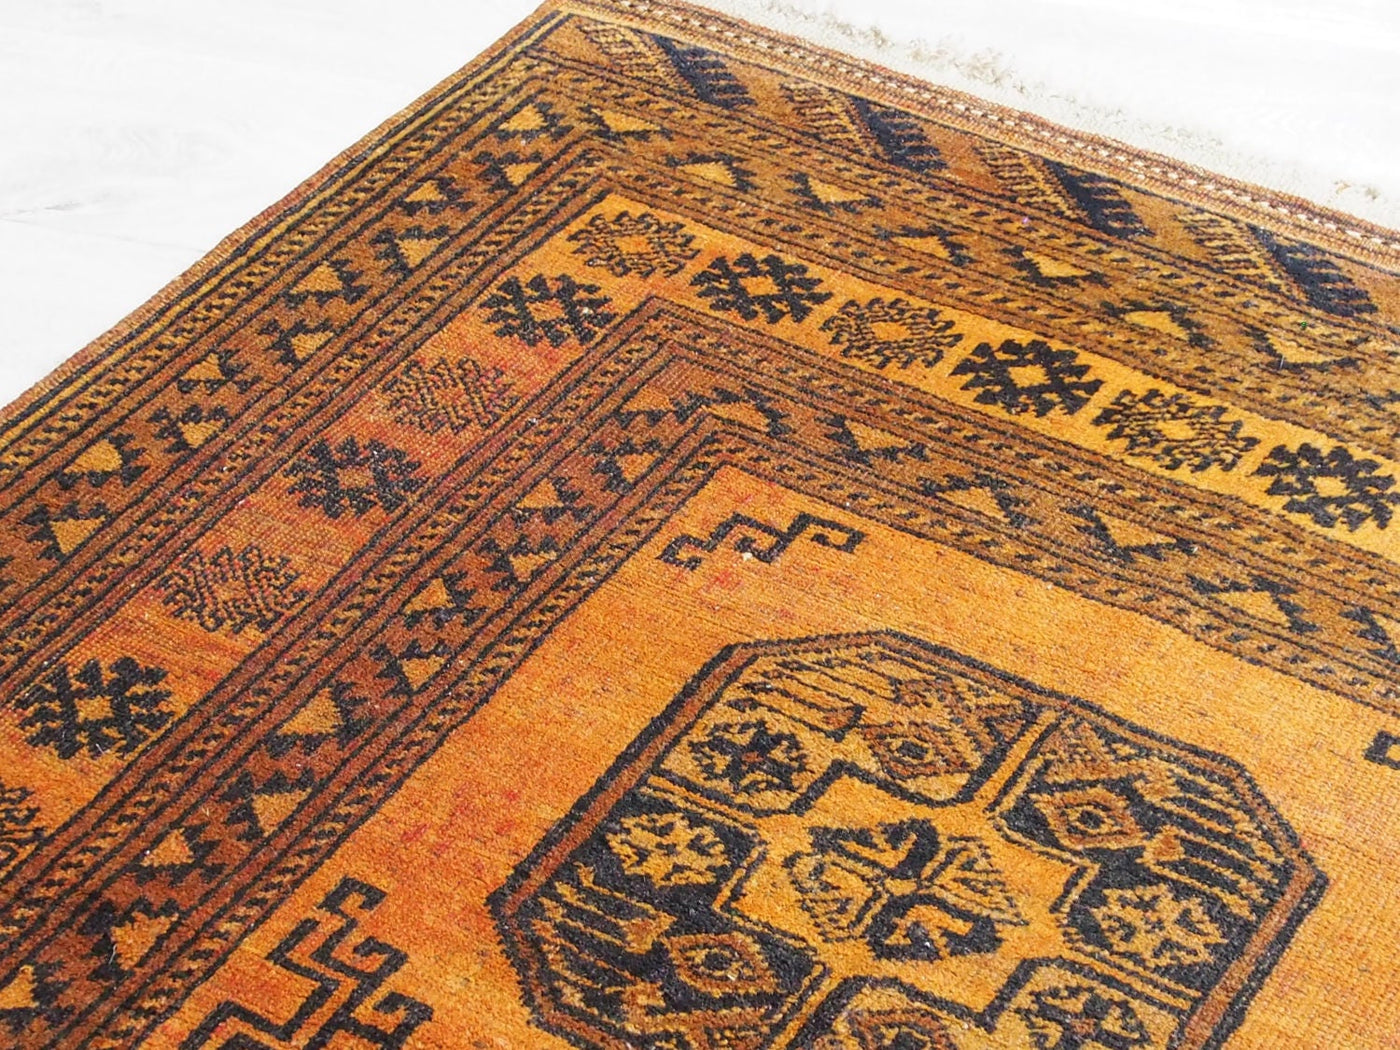 155x112 cm antik orient Nomaden Teppich Turkmen Ersari bukhara Carpet Rug NR17/8  Orientsbazar   